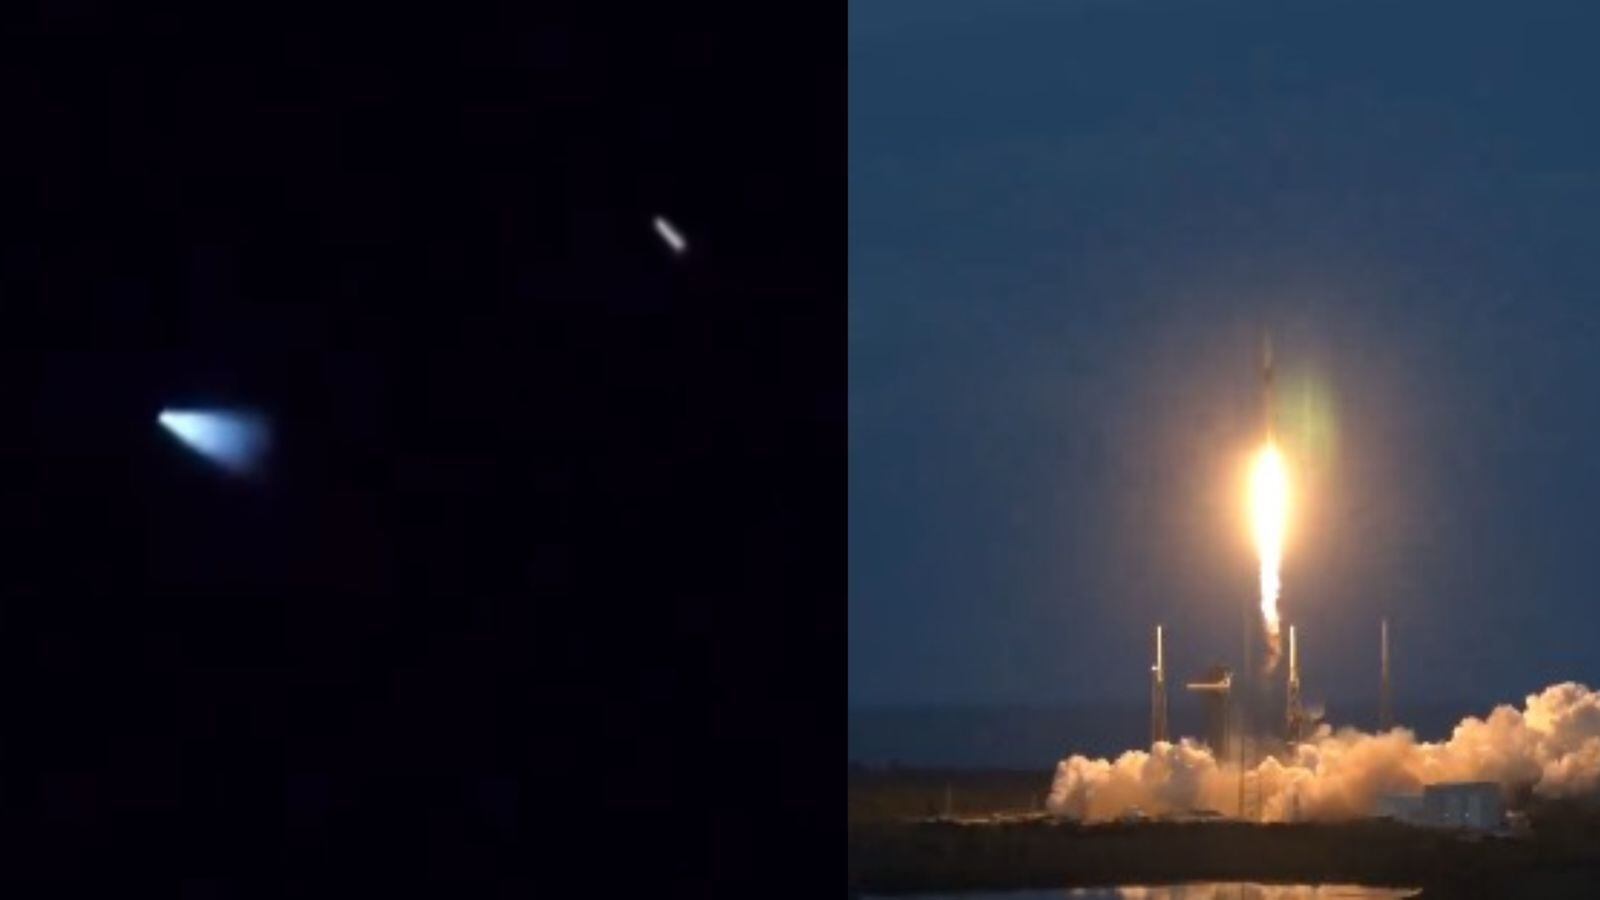 Objeto visto anoche en el cielo era el cohete Falcon 9 de SpaceX